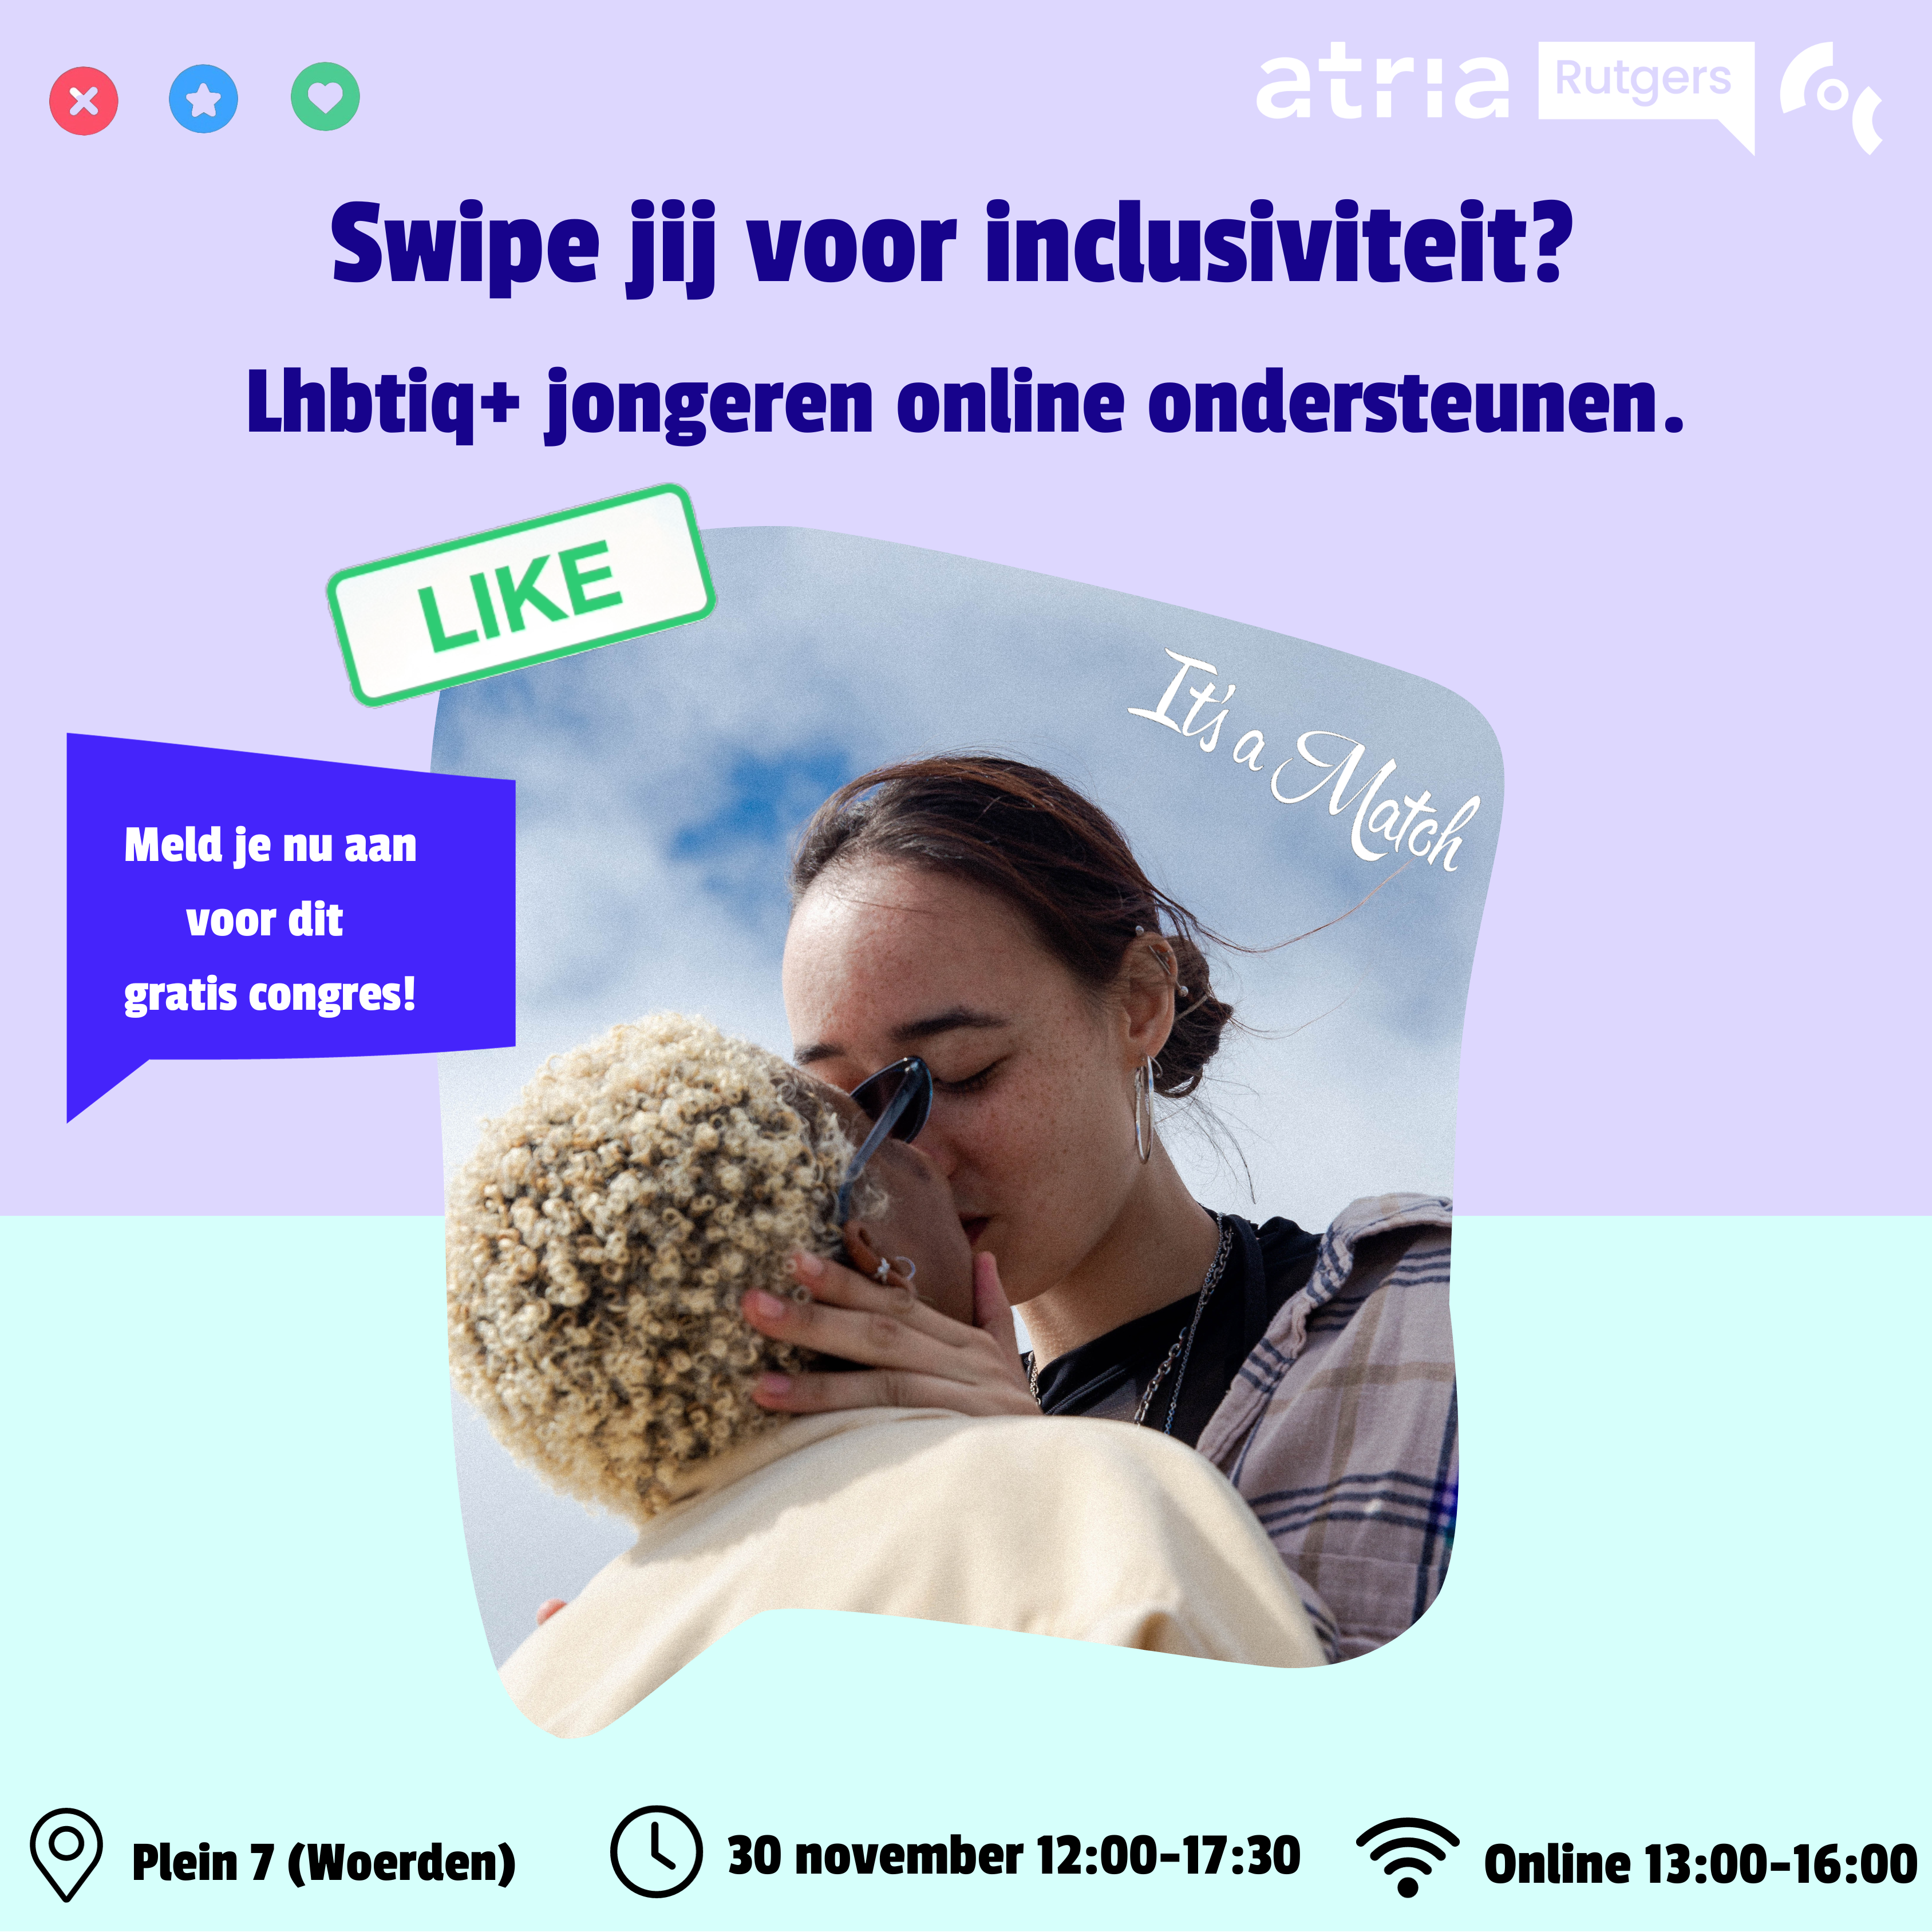 Affiche voor congres met twee queer jongeren die zoenen, met de tekst 'Swipe jij voor inclusiviteit?'